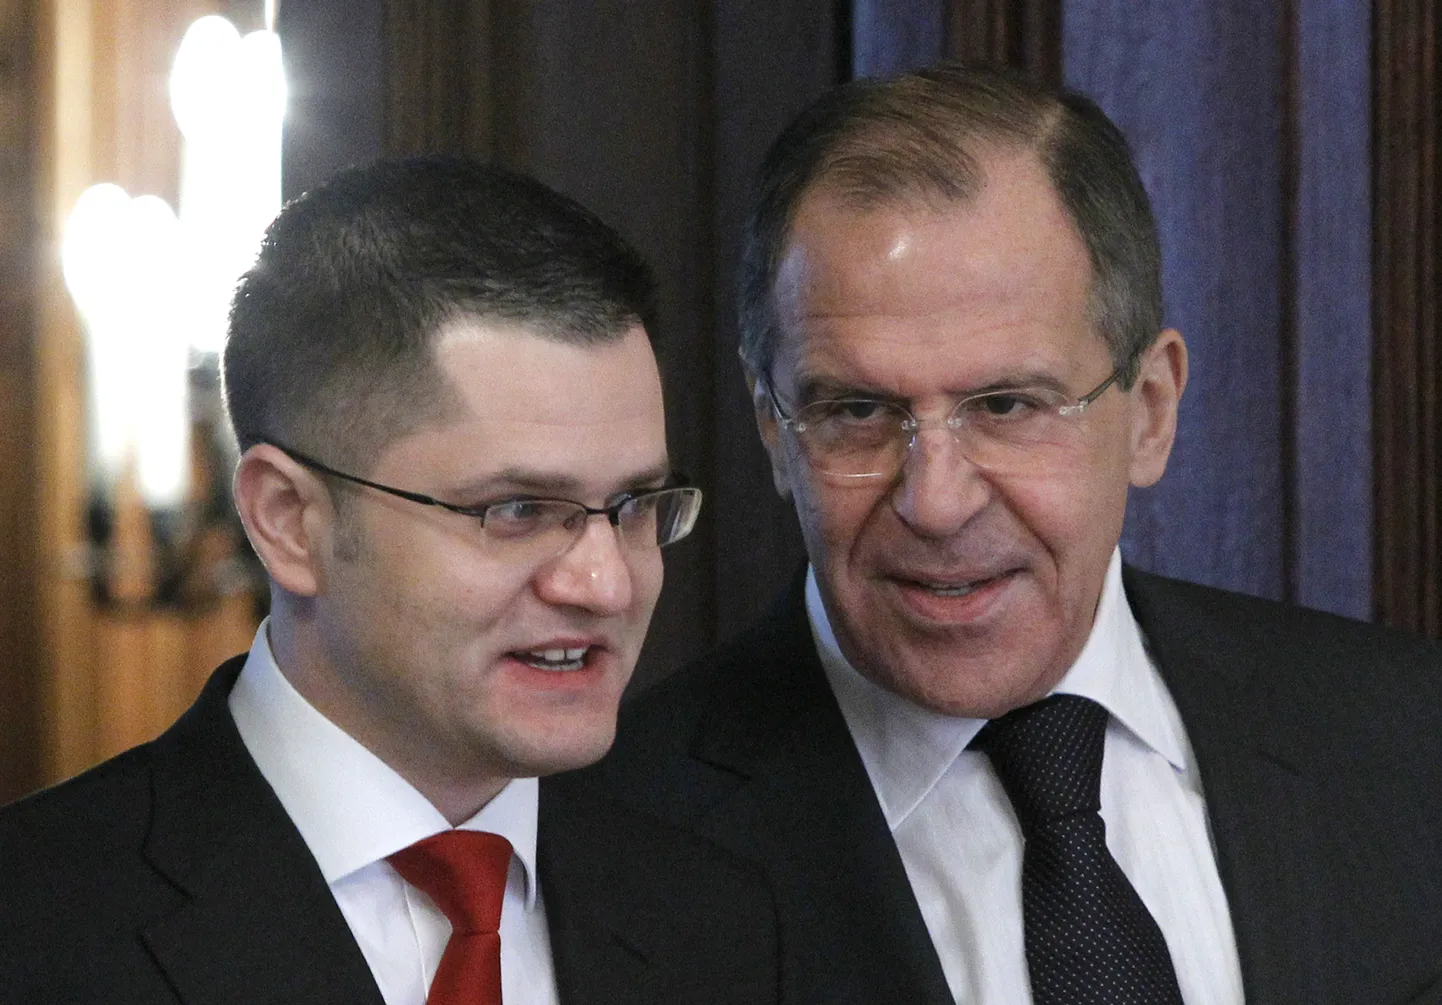 Vene välisminister Sergei Lavrov (paremal) koos Serbia kolleegi Vuk Jeremićiga Moskvas. Jeremić kandideerib ÜRO peaassamblee eesistuja kohale.